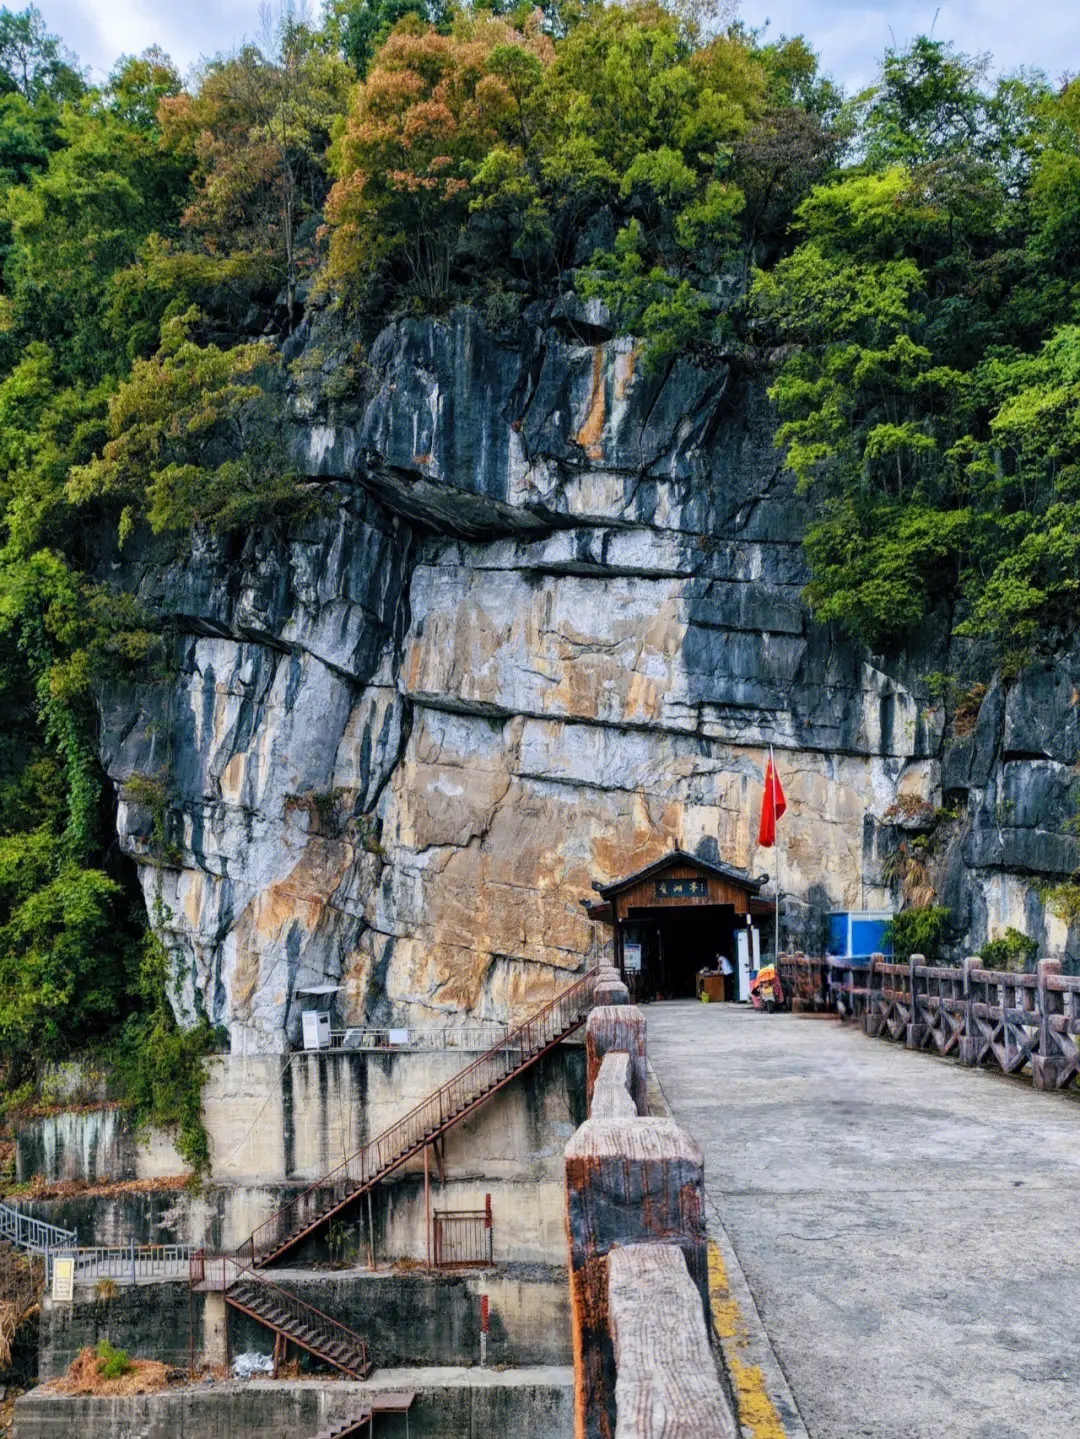 ## 永州旅游景点各项目  永州，一座拥有两千多年历史的文化名城，它位于湖南省的西南部，是湖南通往广